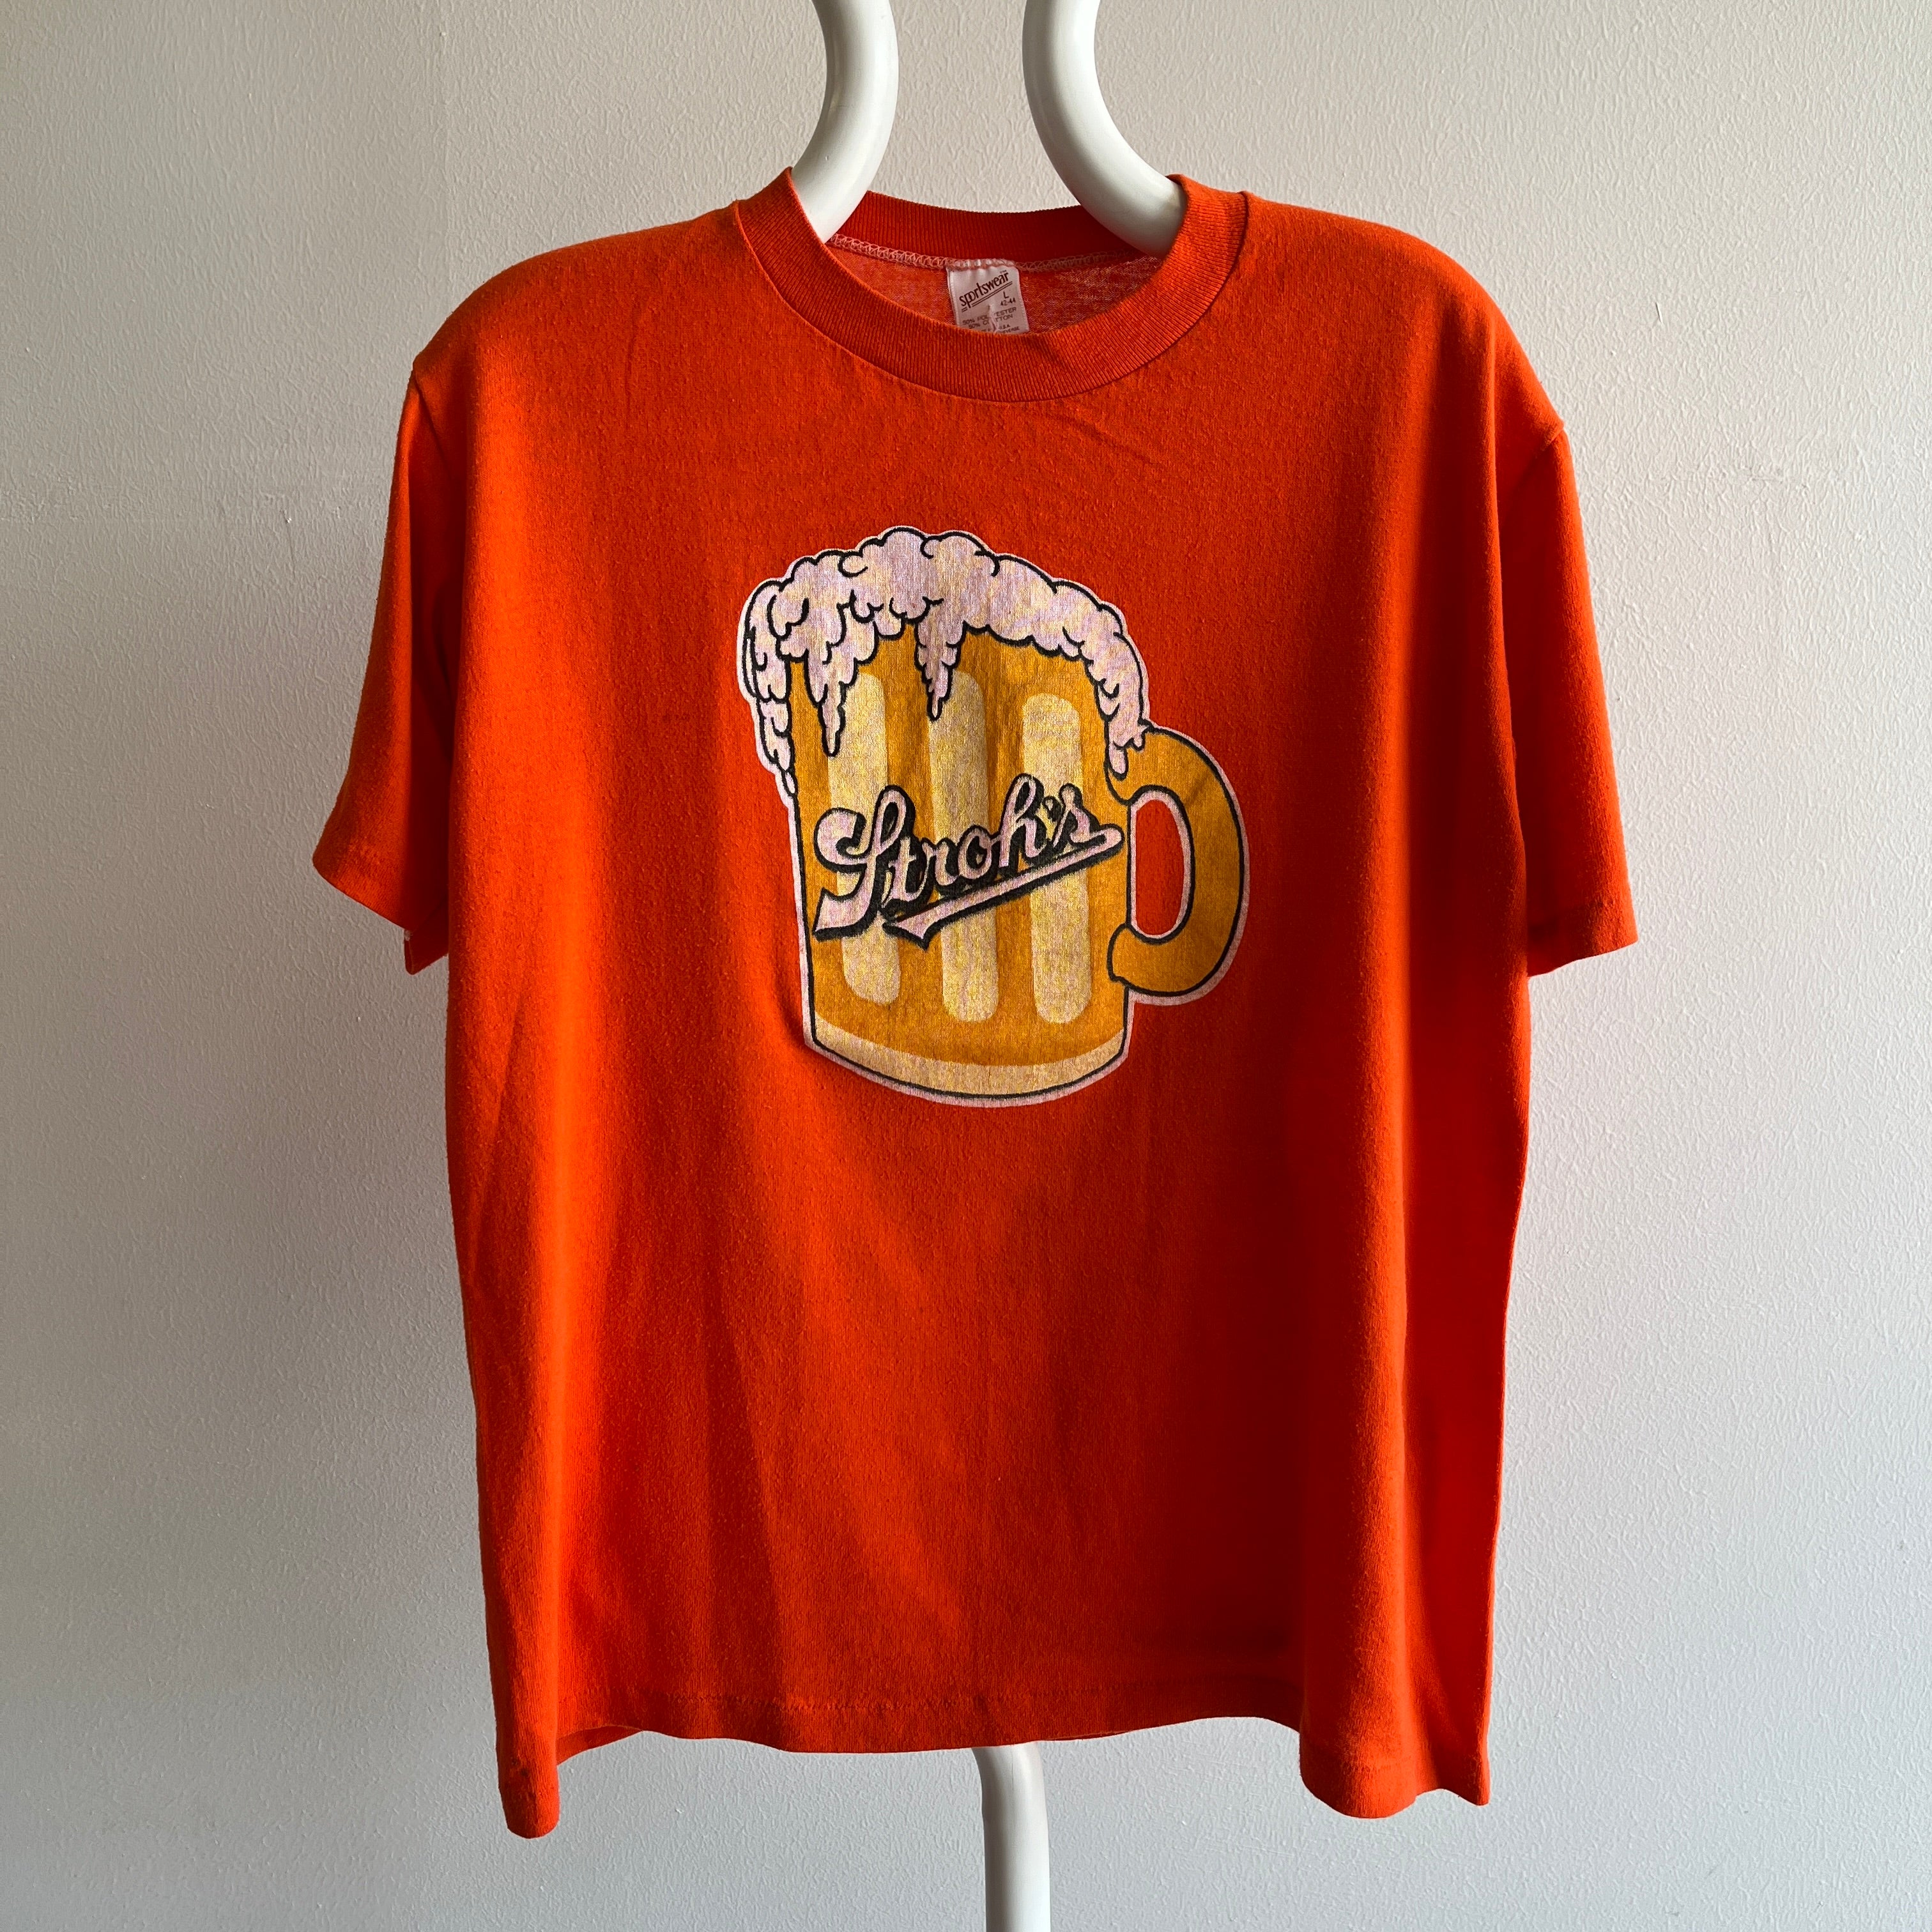 T-shirt de bière de Stroh des années 1970